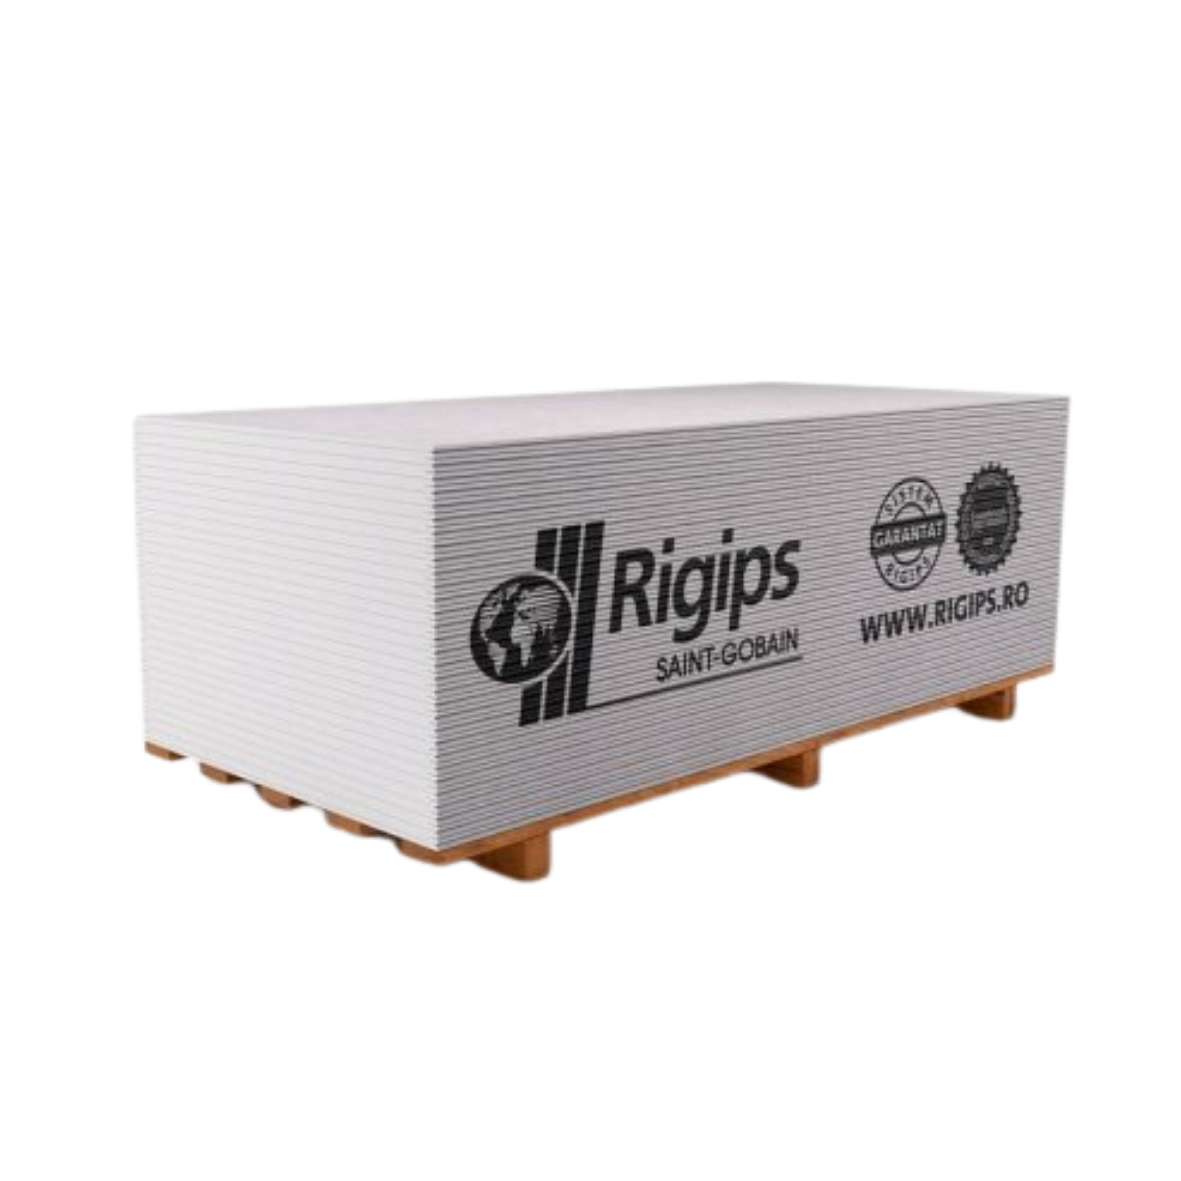 Placi gips carton uzuale - Placa gips carton Rigips RB 12.5 x 1200 x 2000 mm, https:maxbau.ro